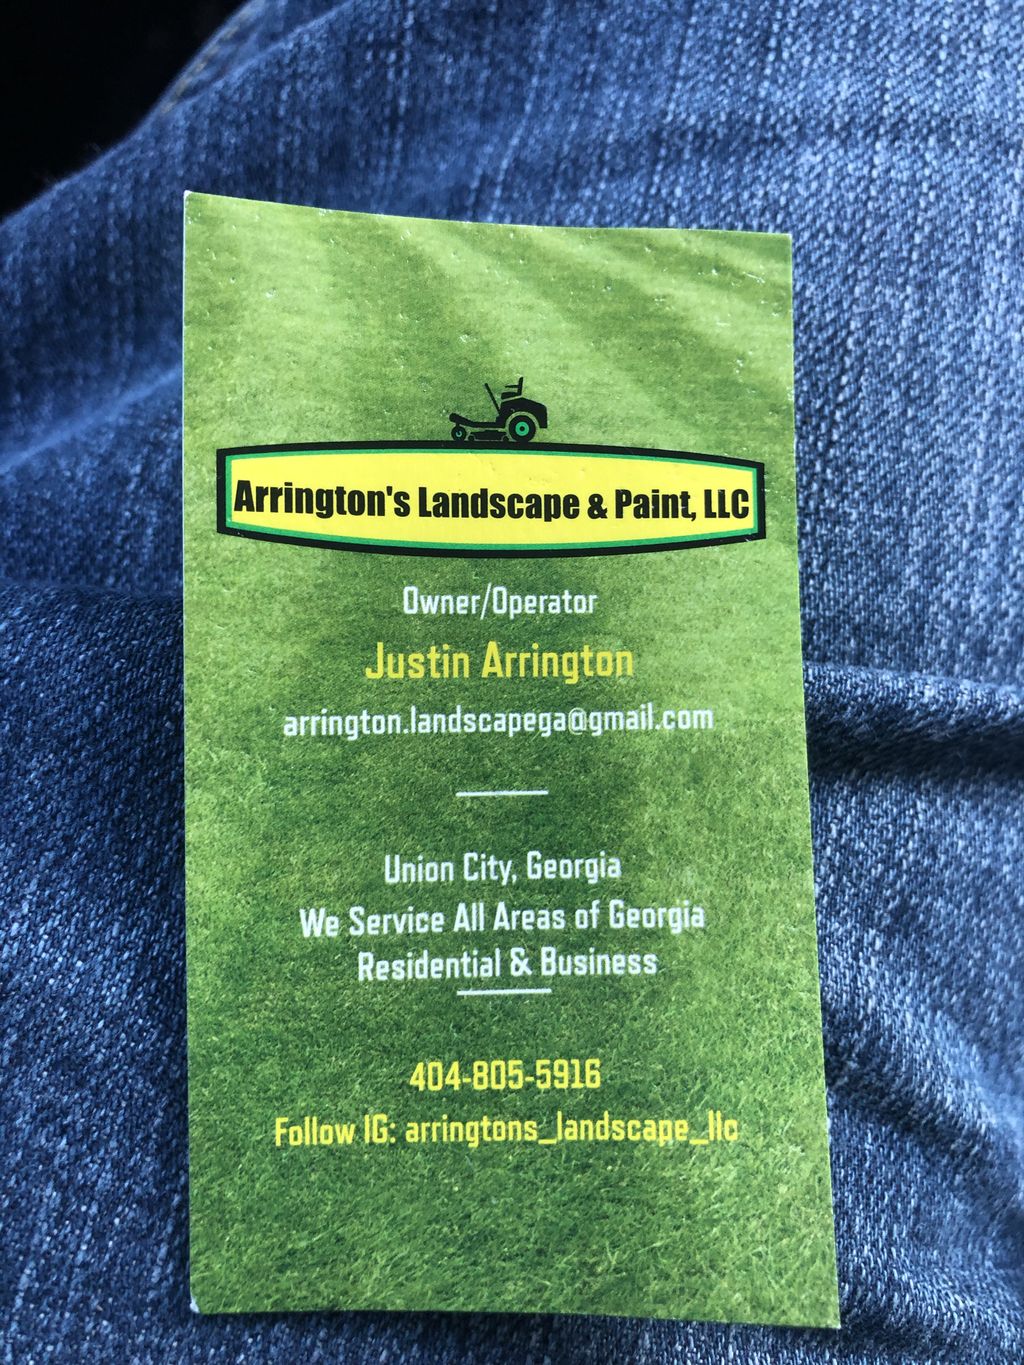 Arrington’s Landscape & Paint LLC